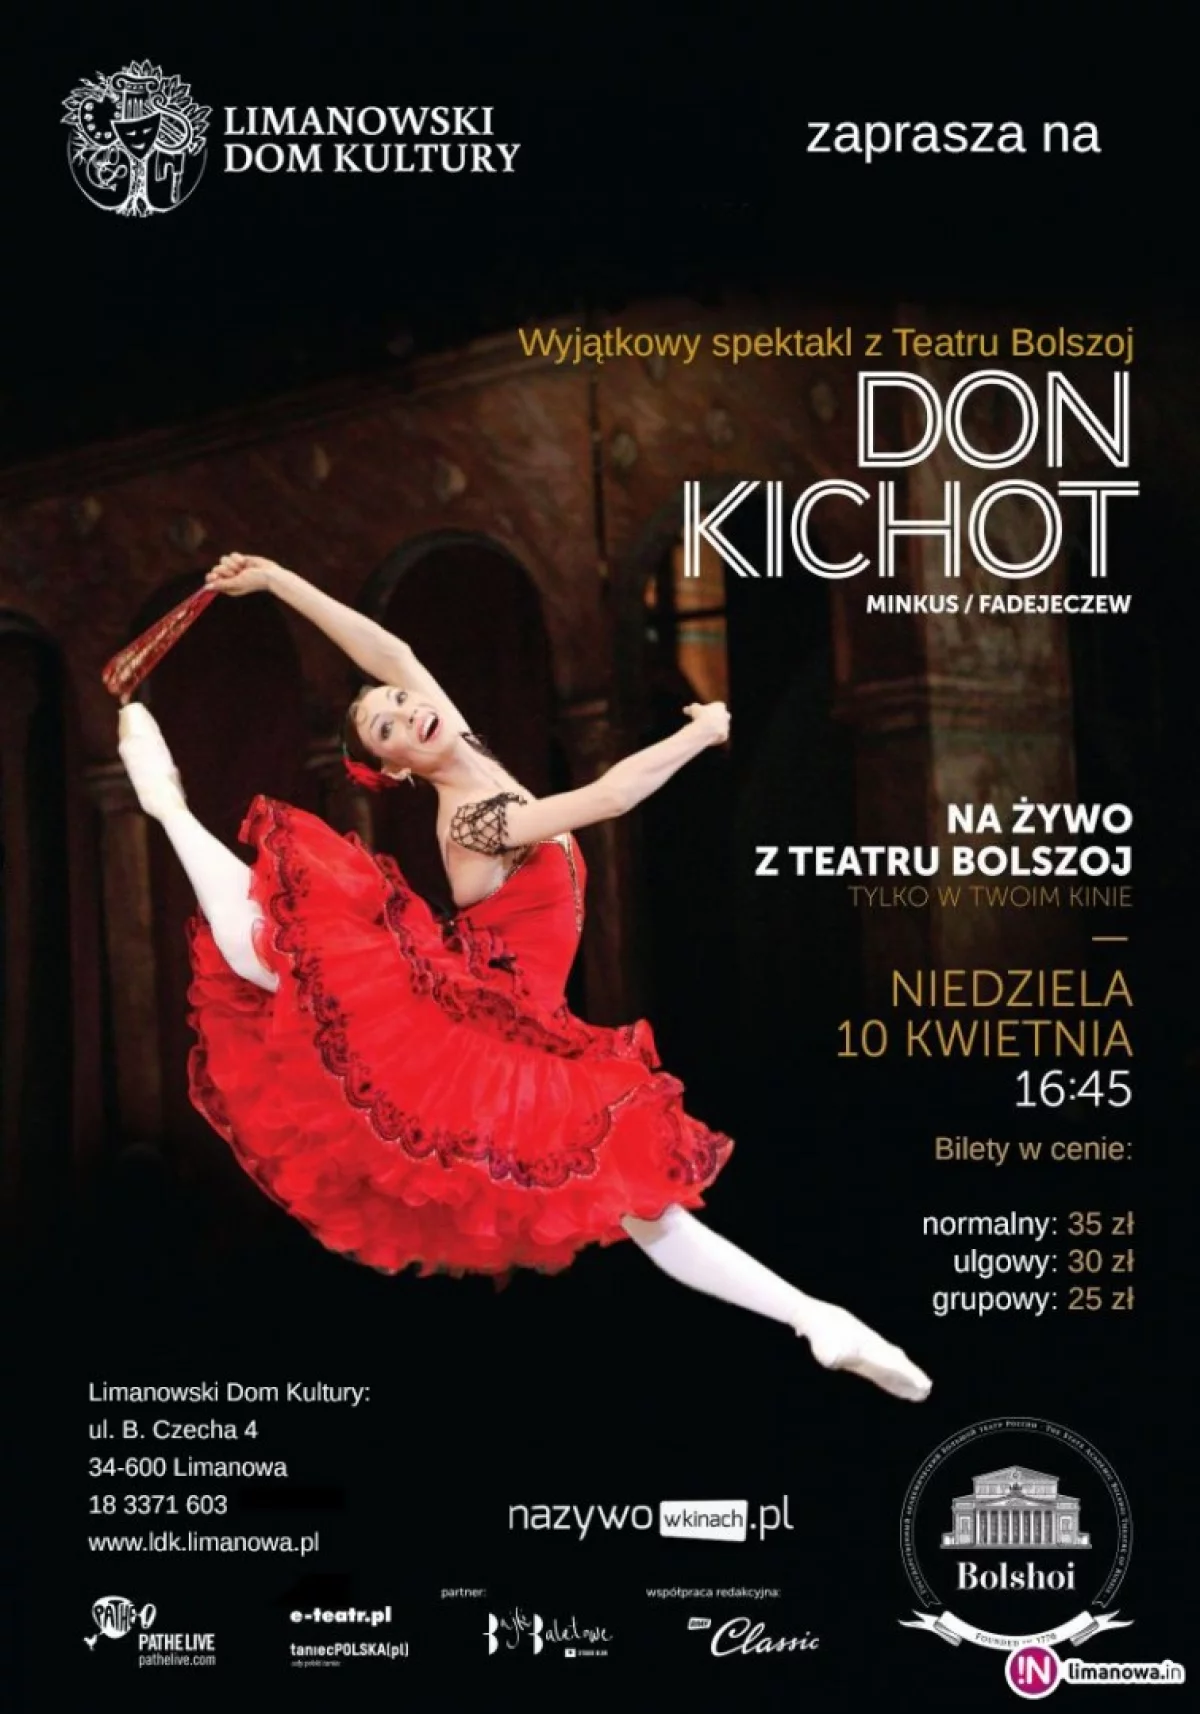 Transmisja baletu na żywo z moskiewskiego Teatru Bolszoj